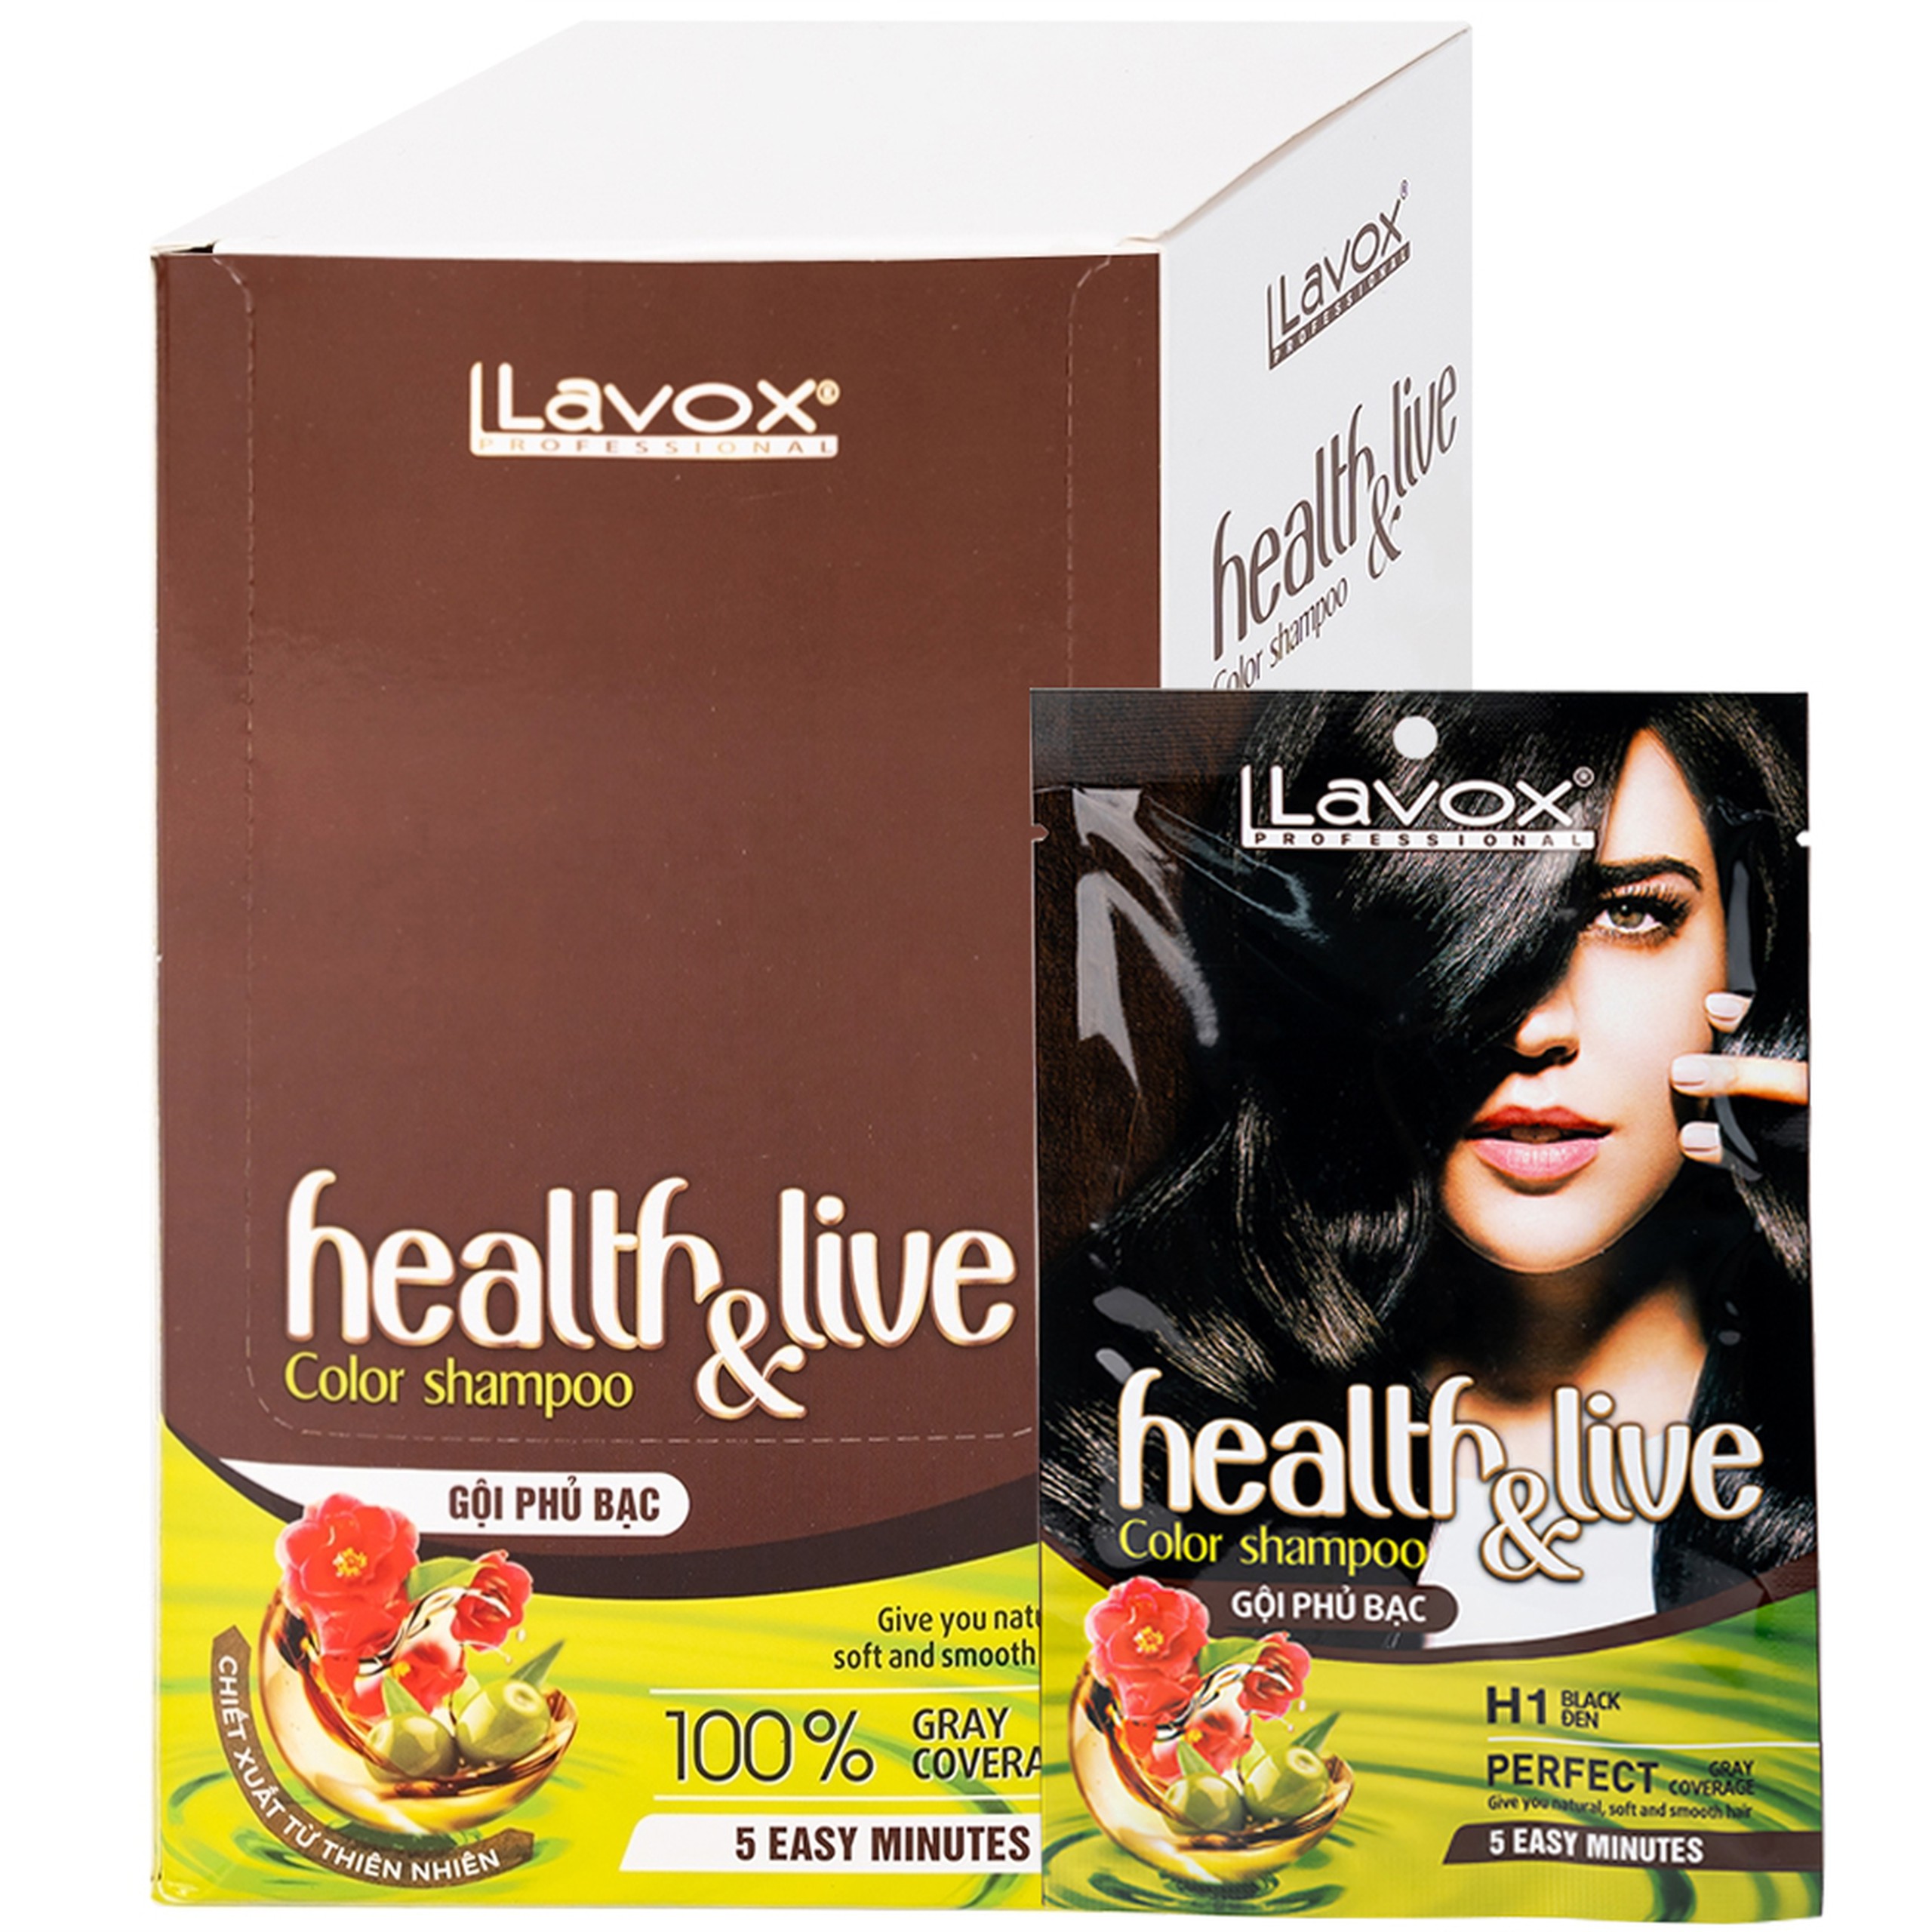 Gội phủ bạc Health and live H1 Lavox màu đen (10 gói x 30ml)